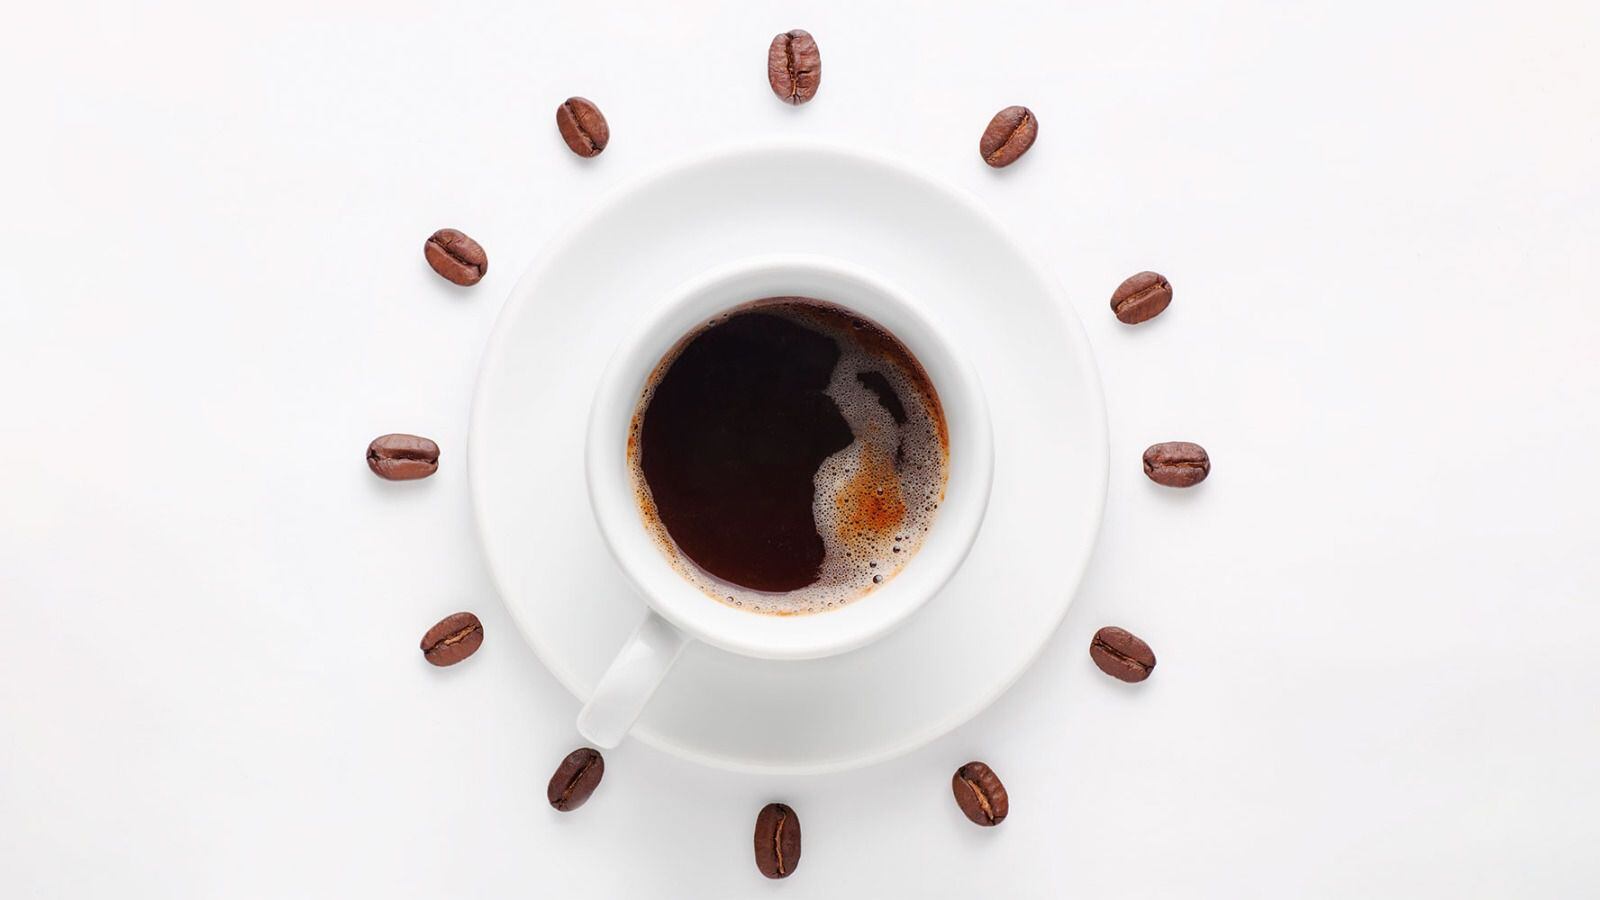 El café es una bebida con la sustancia activa llamada cafeína, que ayuda a tener estado de alerta. (Foto: Shutterstock).